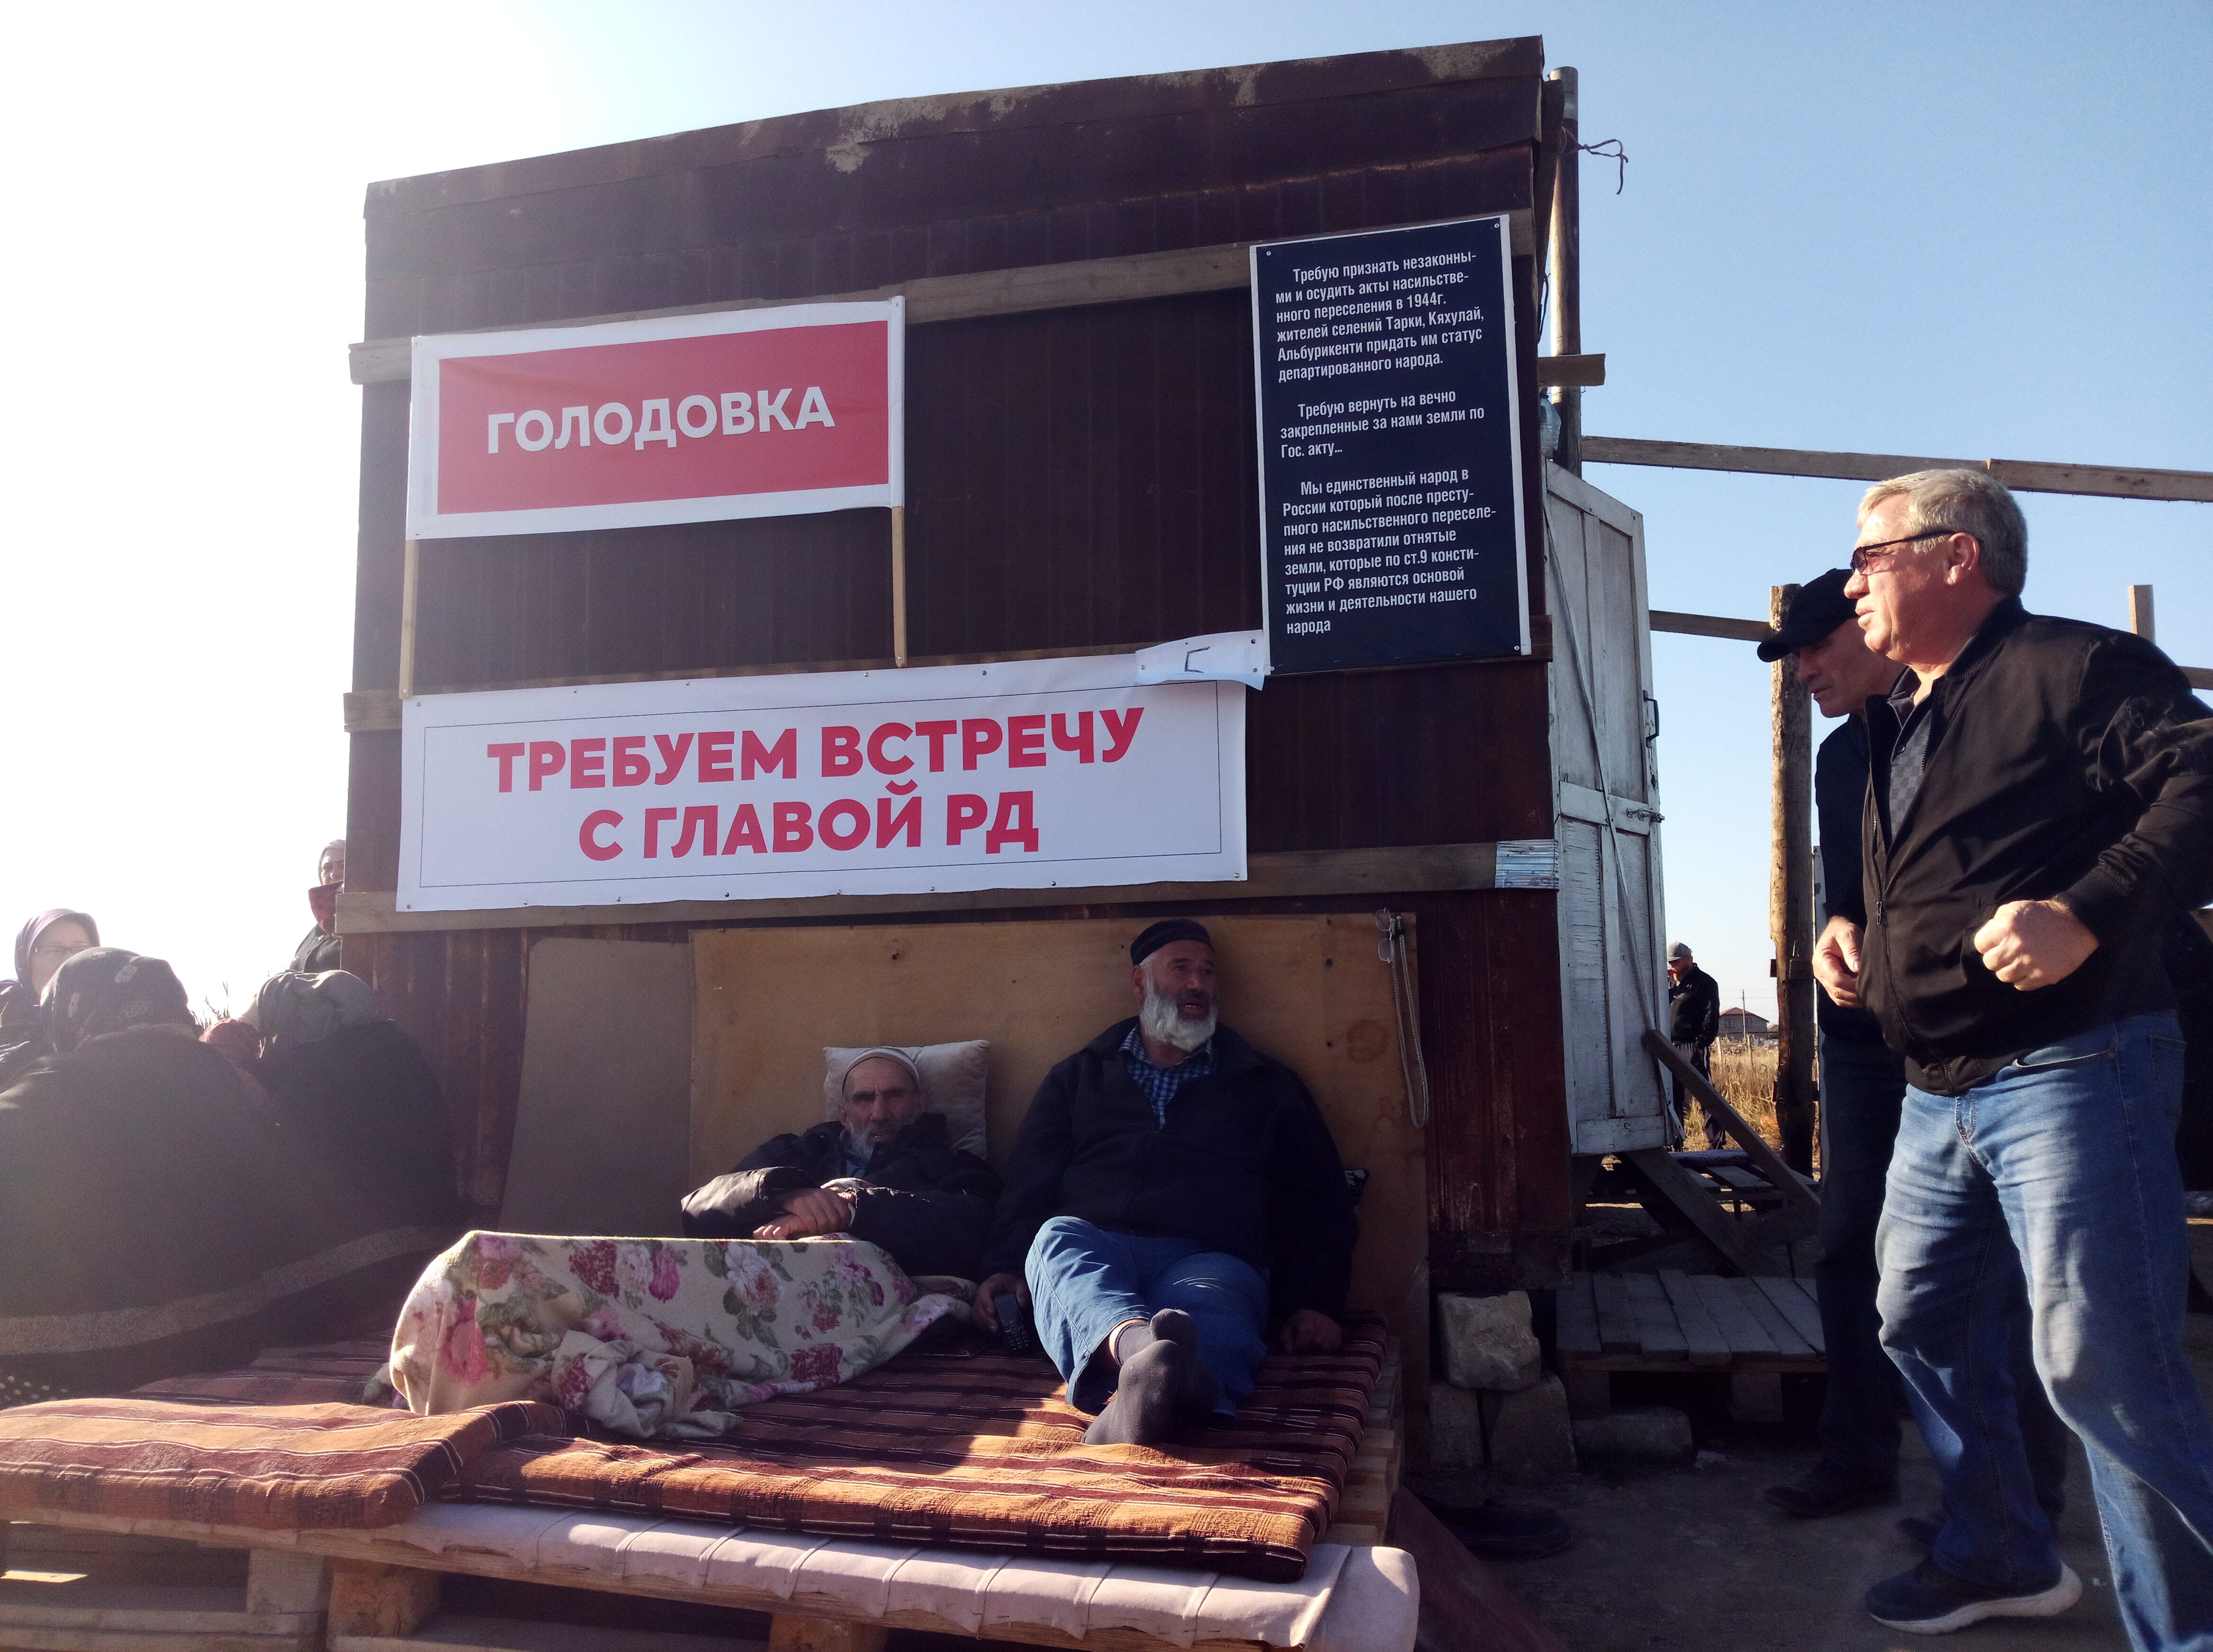 Деревянный вагончик, где проходит голодовка двух жителей поселка Альбурикент. 25 октября 2019 года. Фото Расула Магомедова для «Кавказского узла»